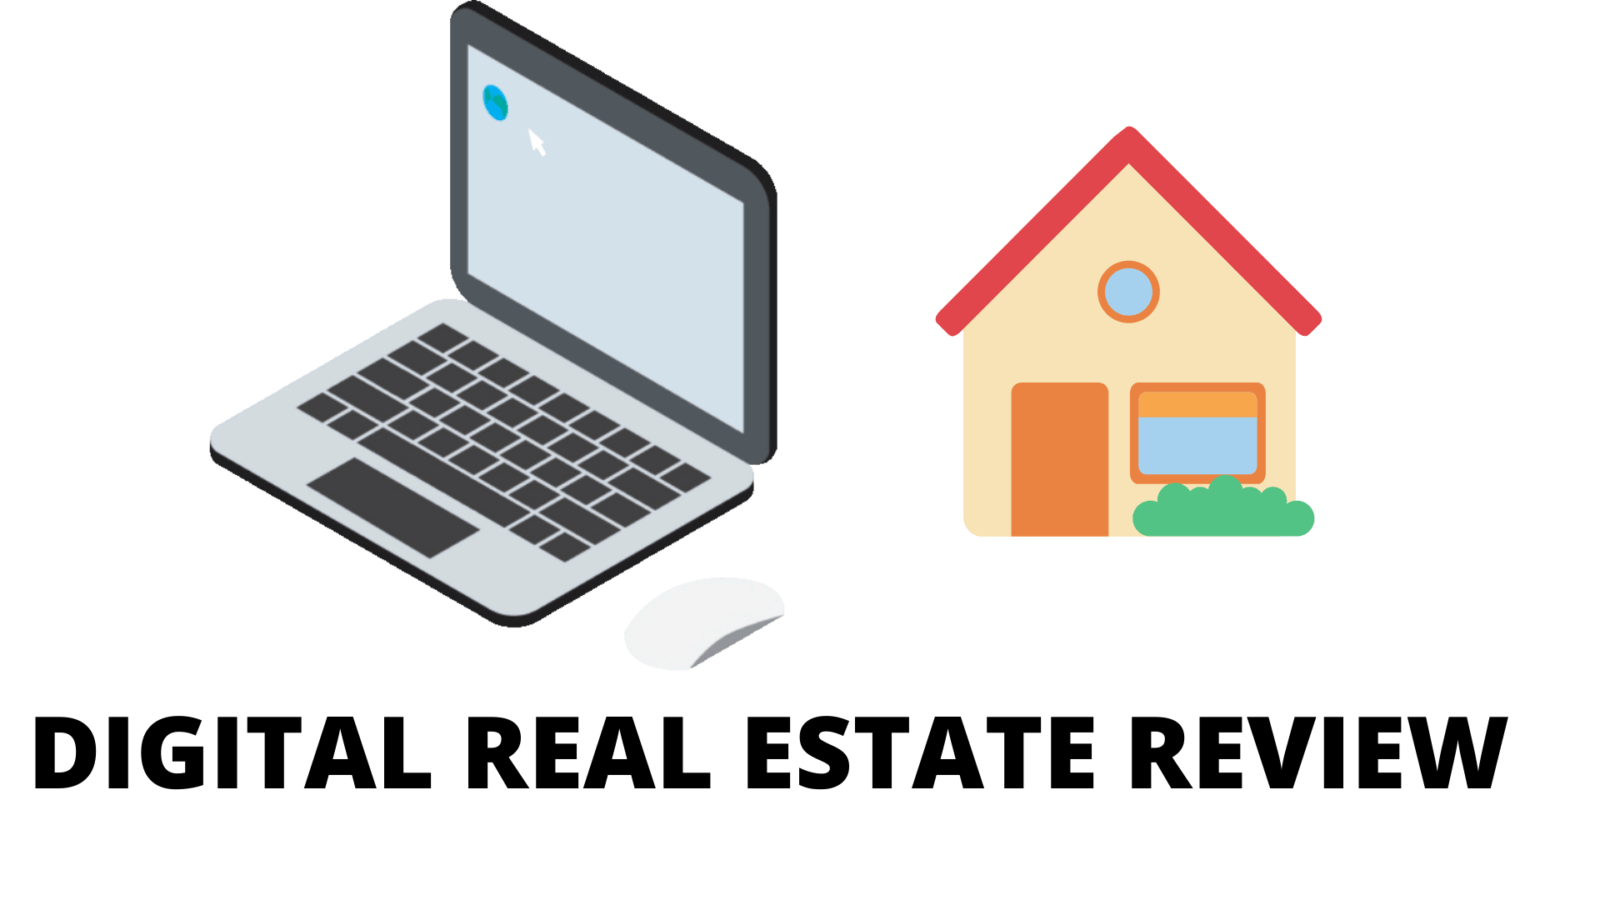 Digital Real Estate Review